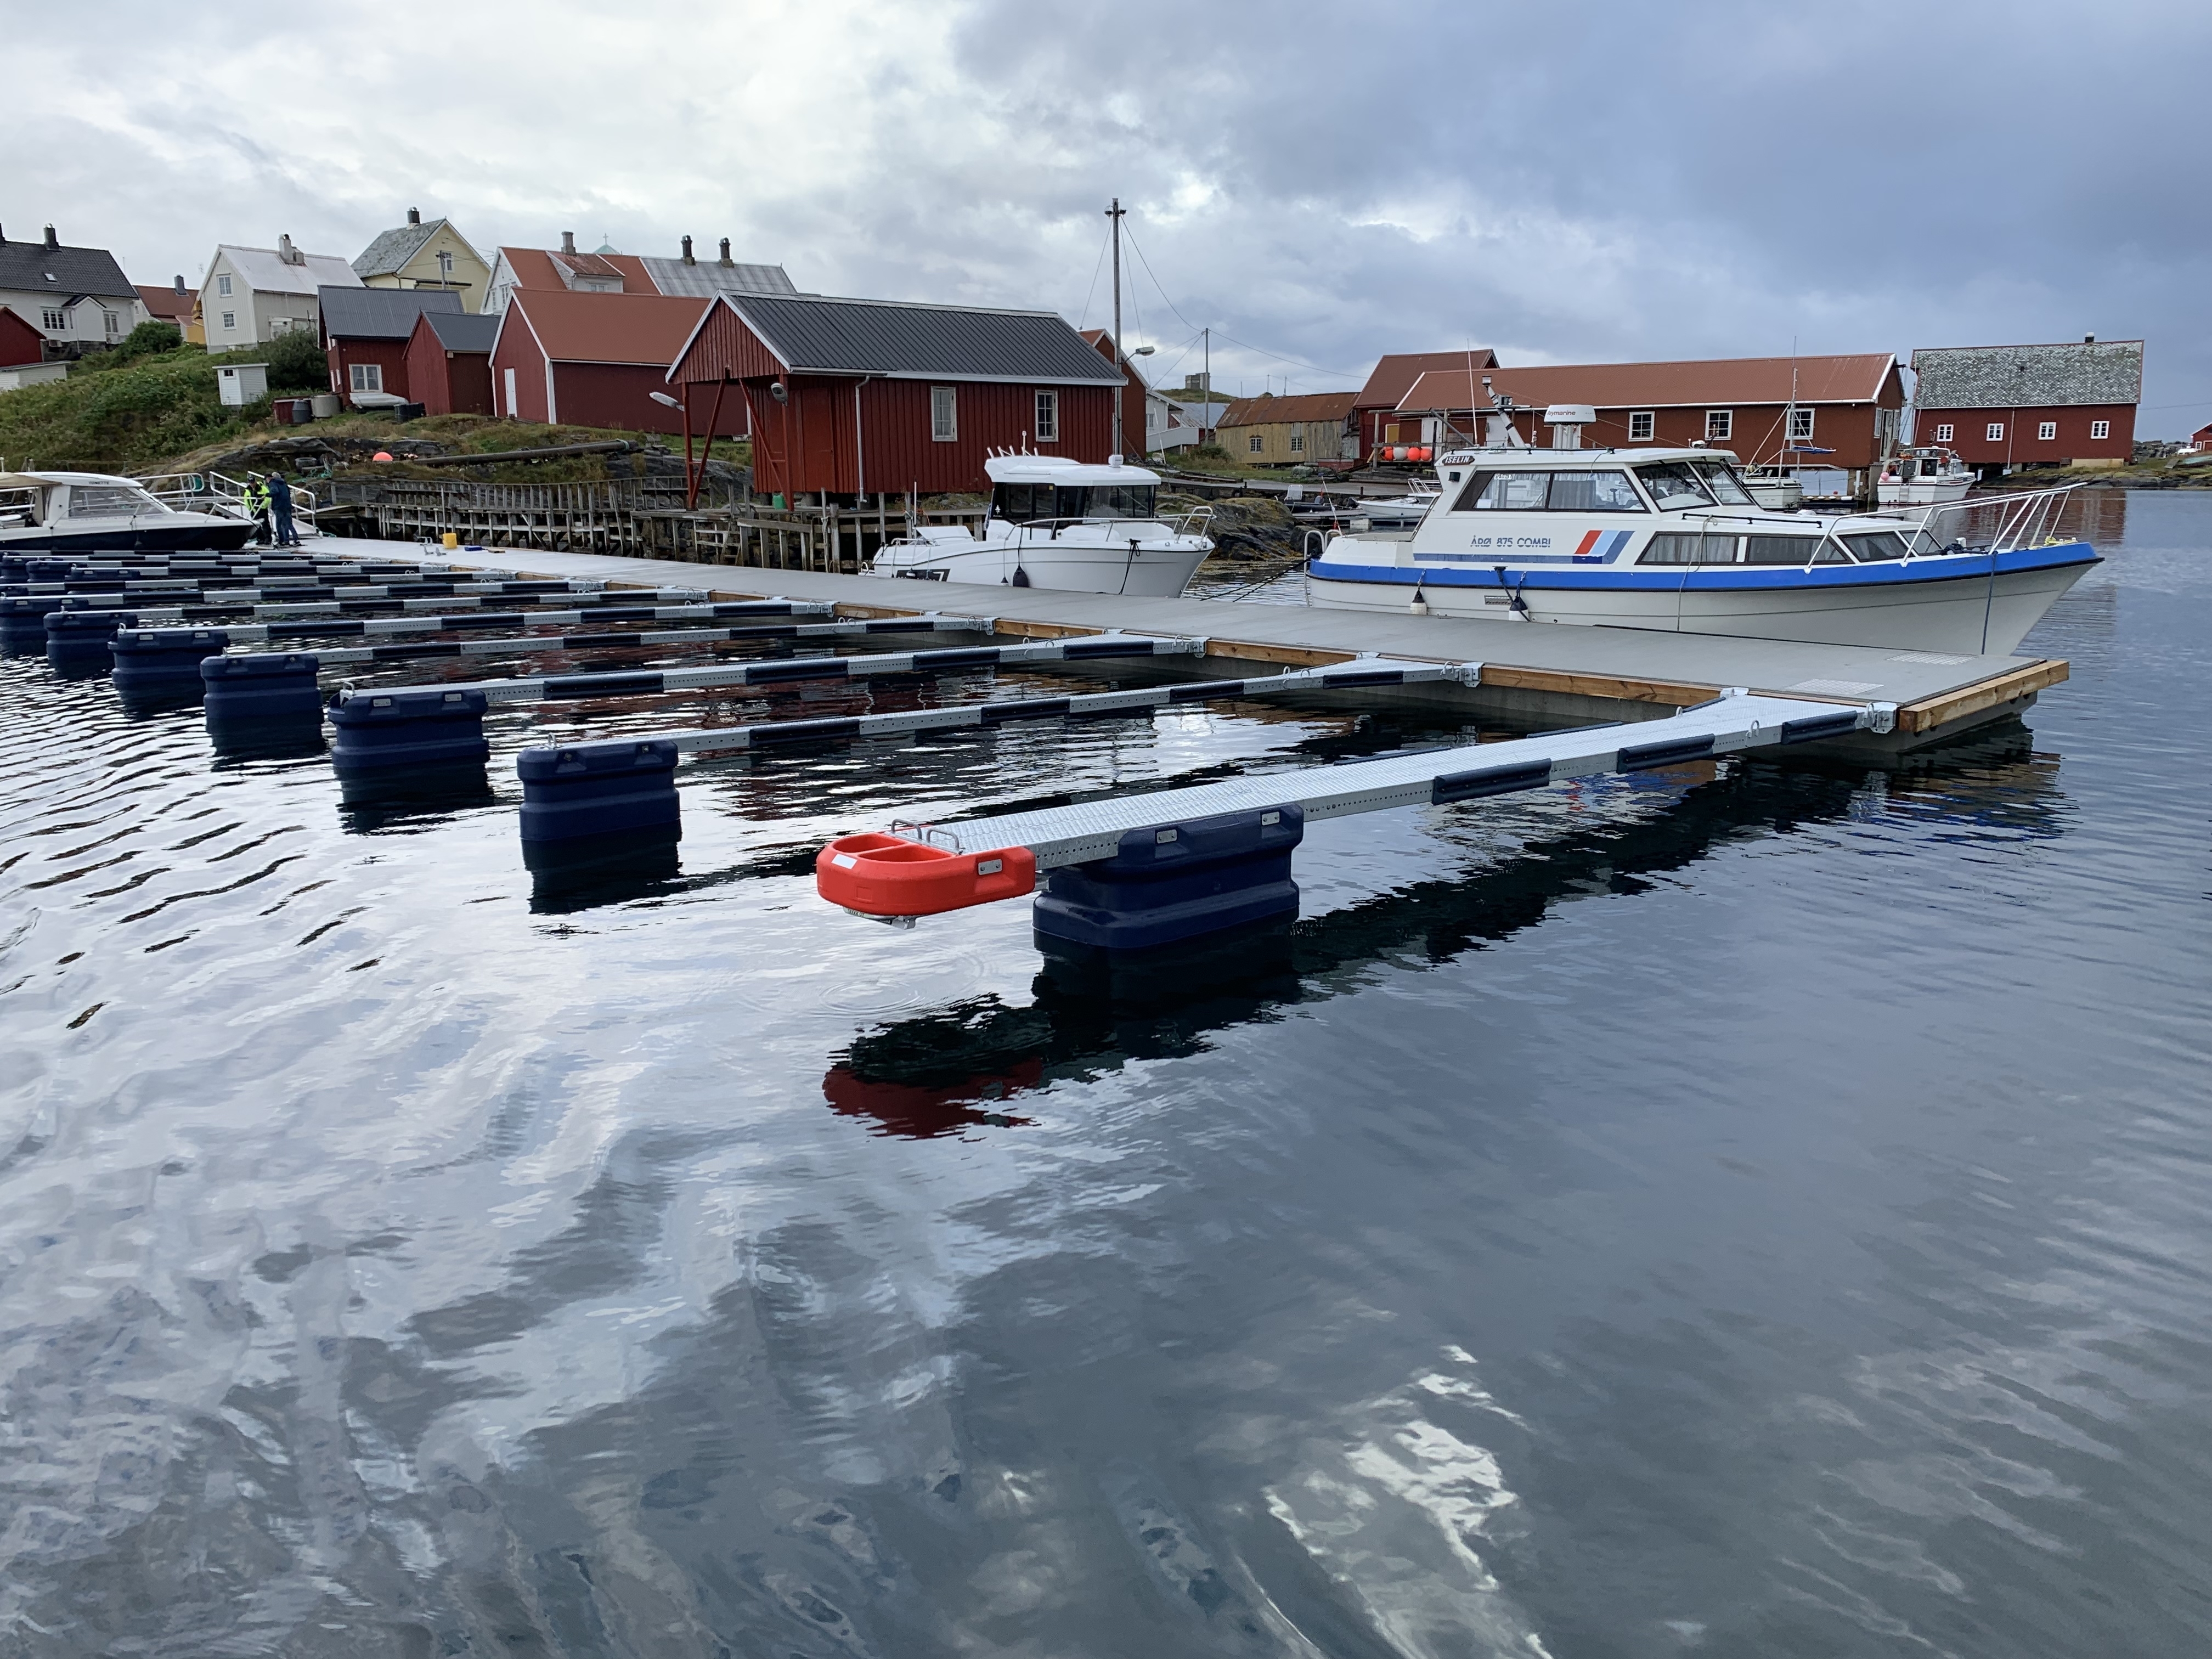 https://marinasolutions.no/uploads/Hamnaberget-småbåtforening-nordre-bjørnsund-marina-solutions-betongbrygger-sklisikre-utriggere-8.jpg